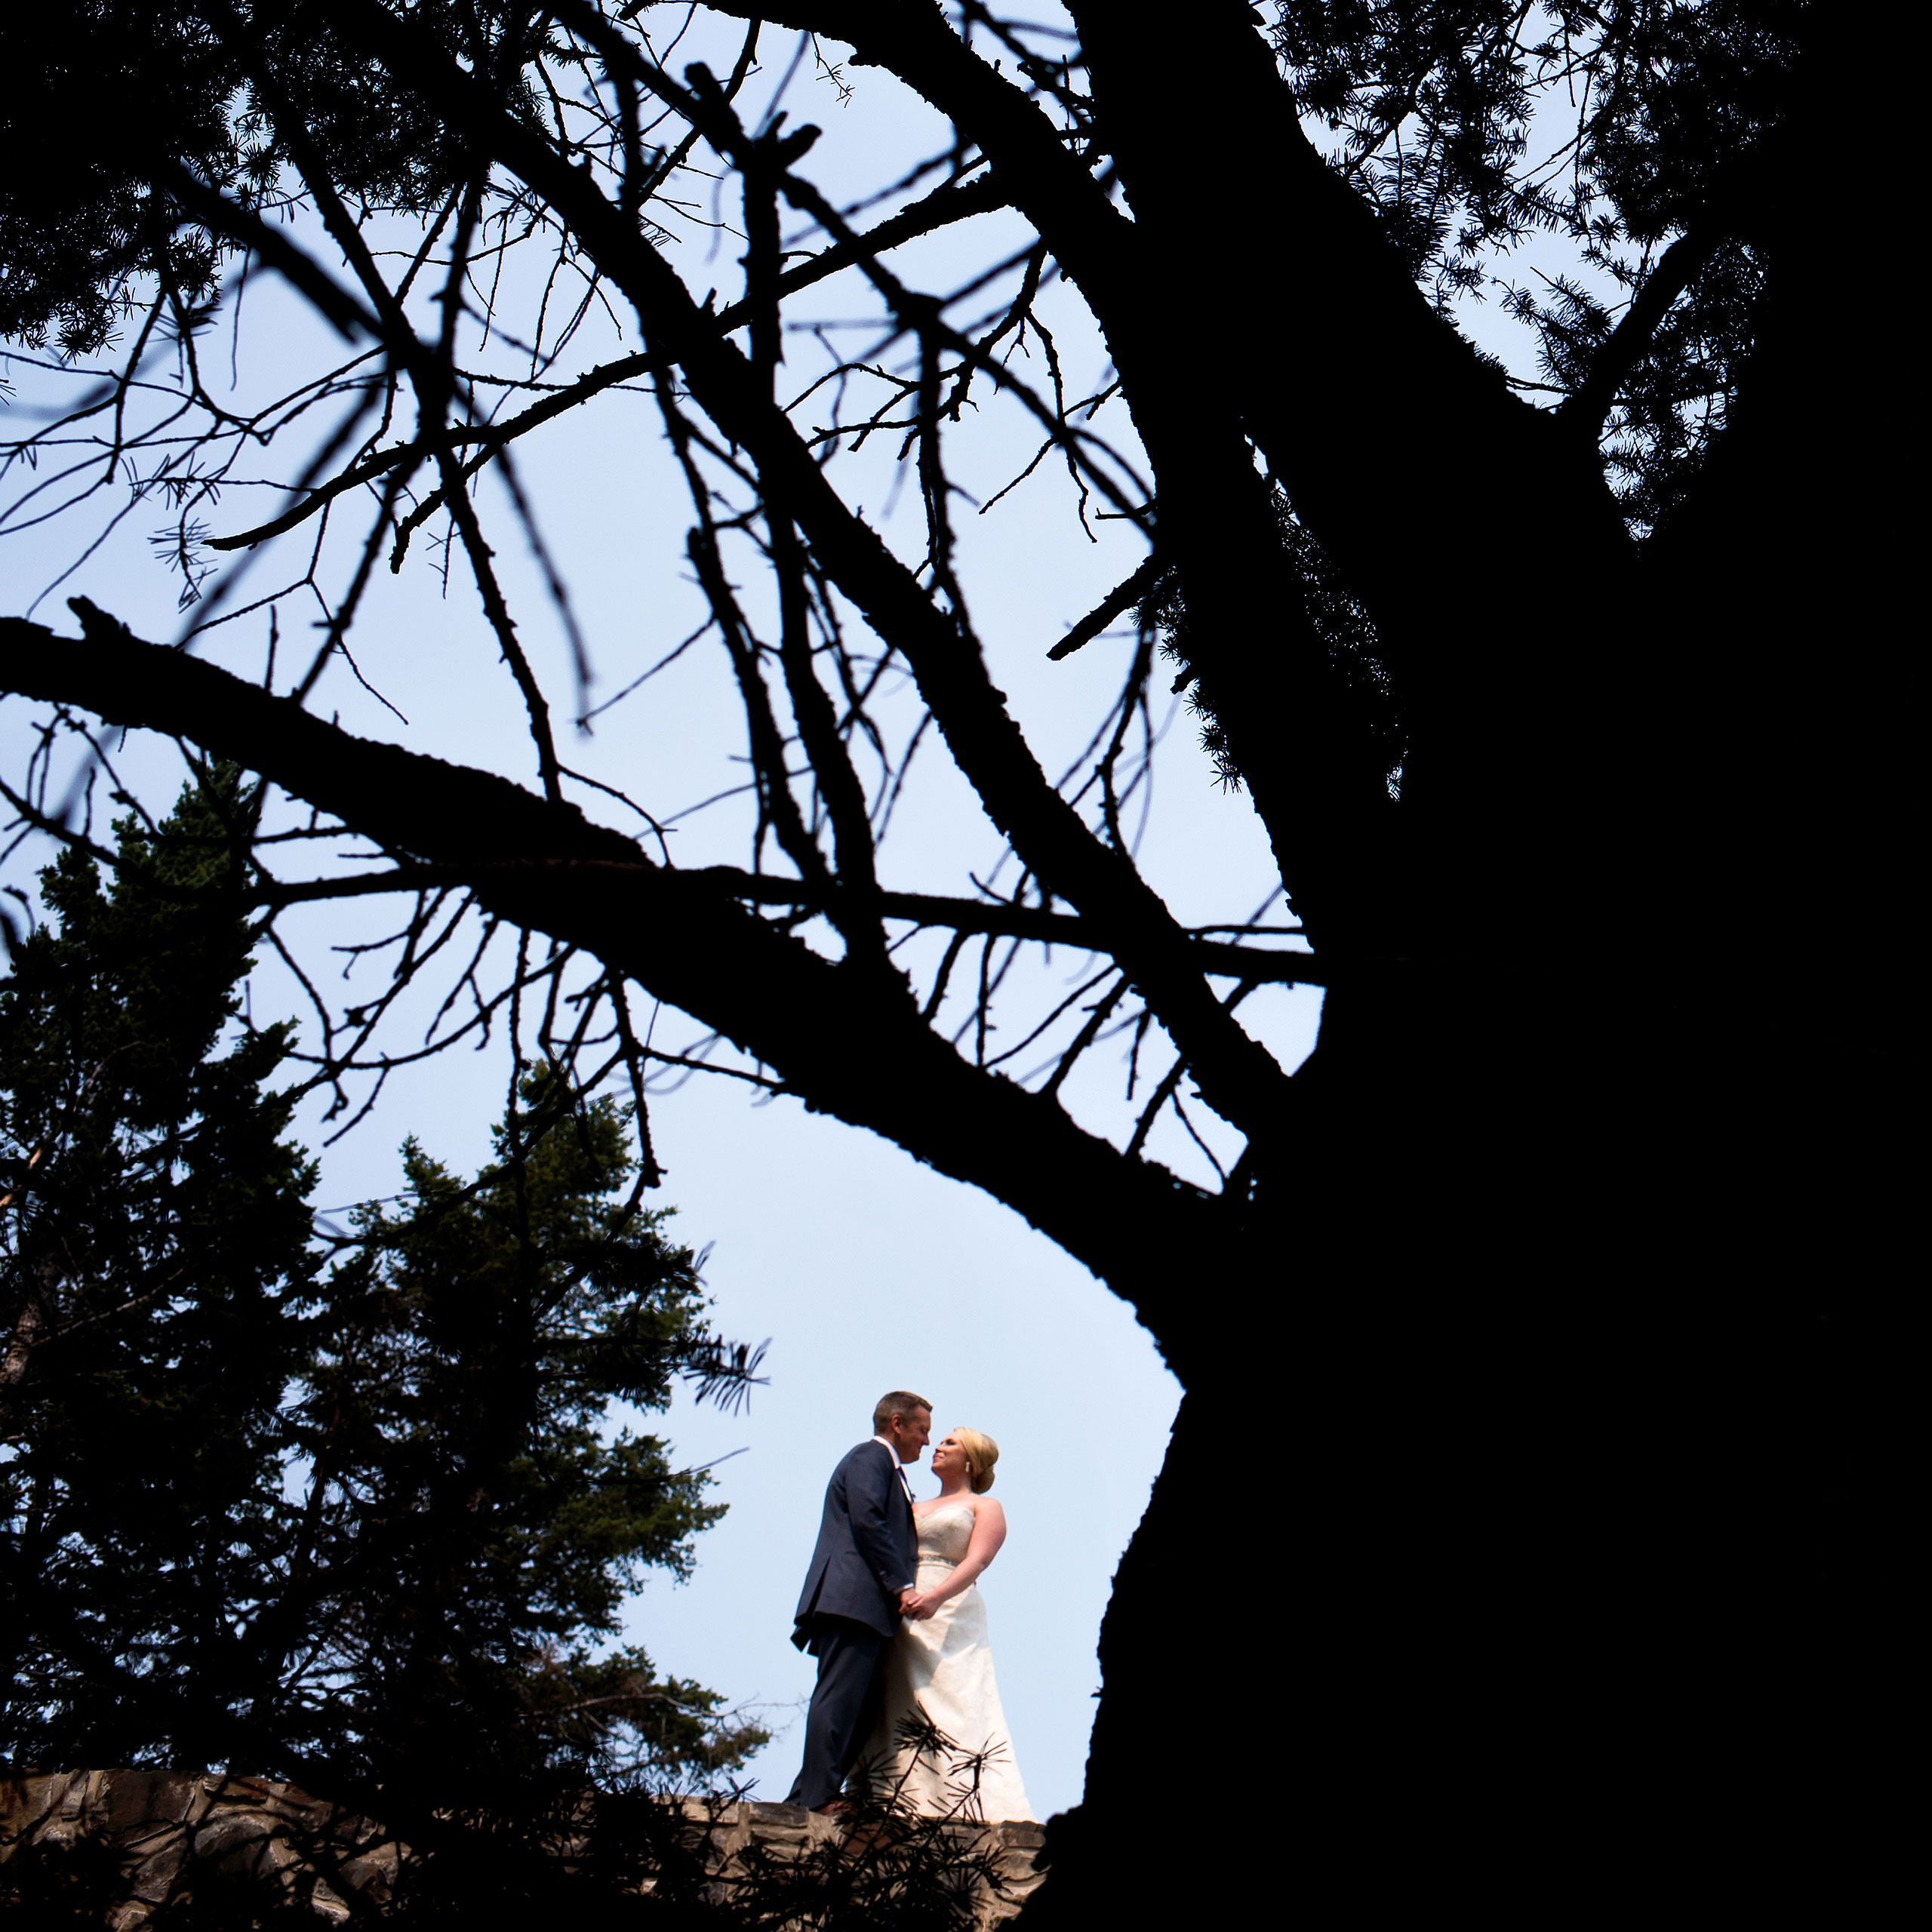 heirloom wedding album by Banff photographer sean leblanc